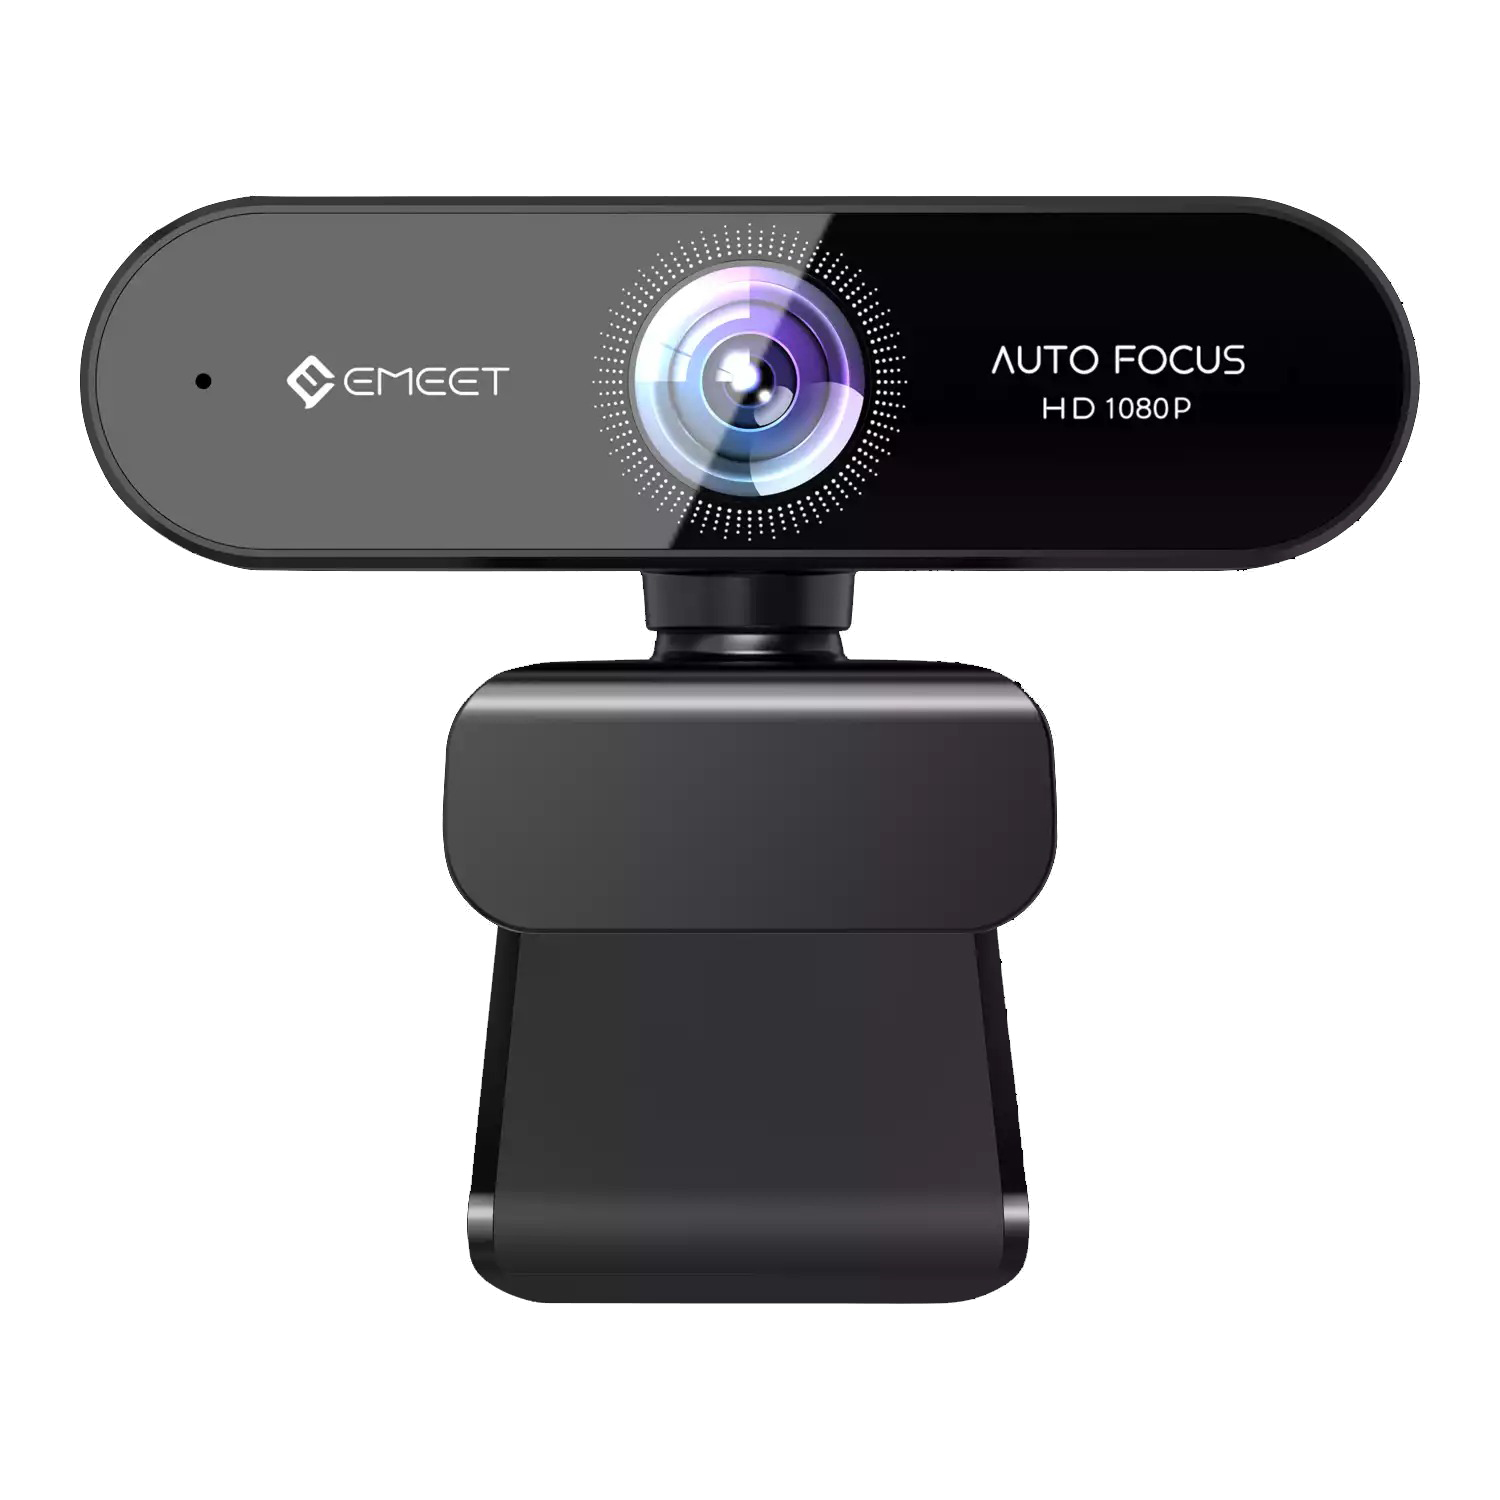 Emeet Nova - Webcam Họp Trực Tuyến Góc Rộng 96 Độ, Full HD 1080p, Tốc Độ Khung Hình 30fps - Hàng Chính Hãng